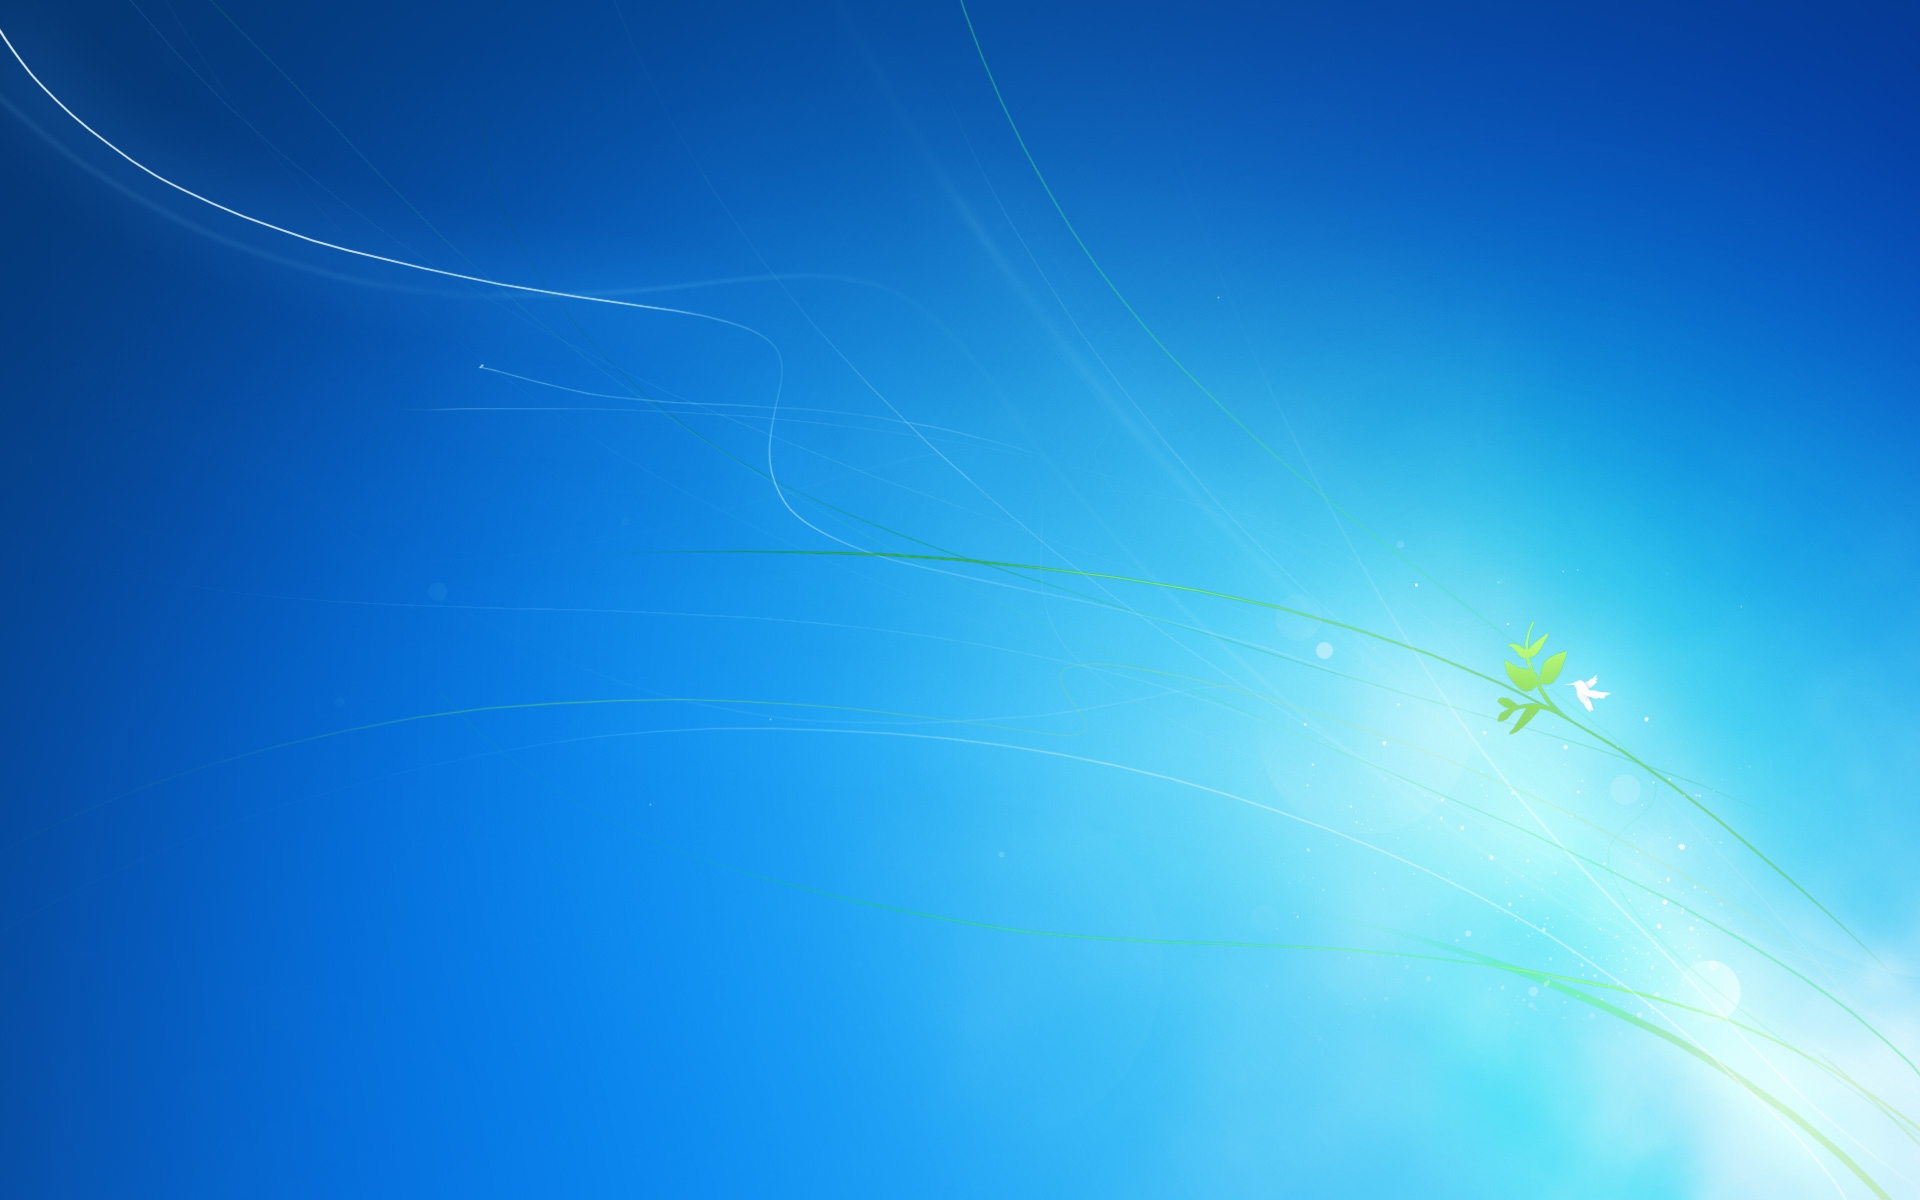 Hình nền Windows 7 màu xanh HD: Bạn muốn tìm kiếm một hình nền màu xanh chất lượng cao cho máy tính của bạn? Xem ngay hình ảnh liên quan để tìm hình nền Windows 7 màu xanh HD đẹp nhất.